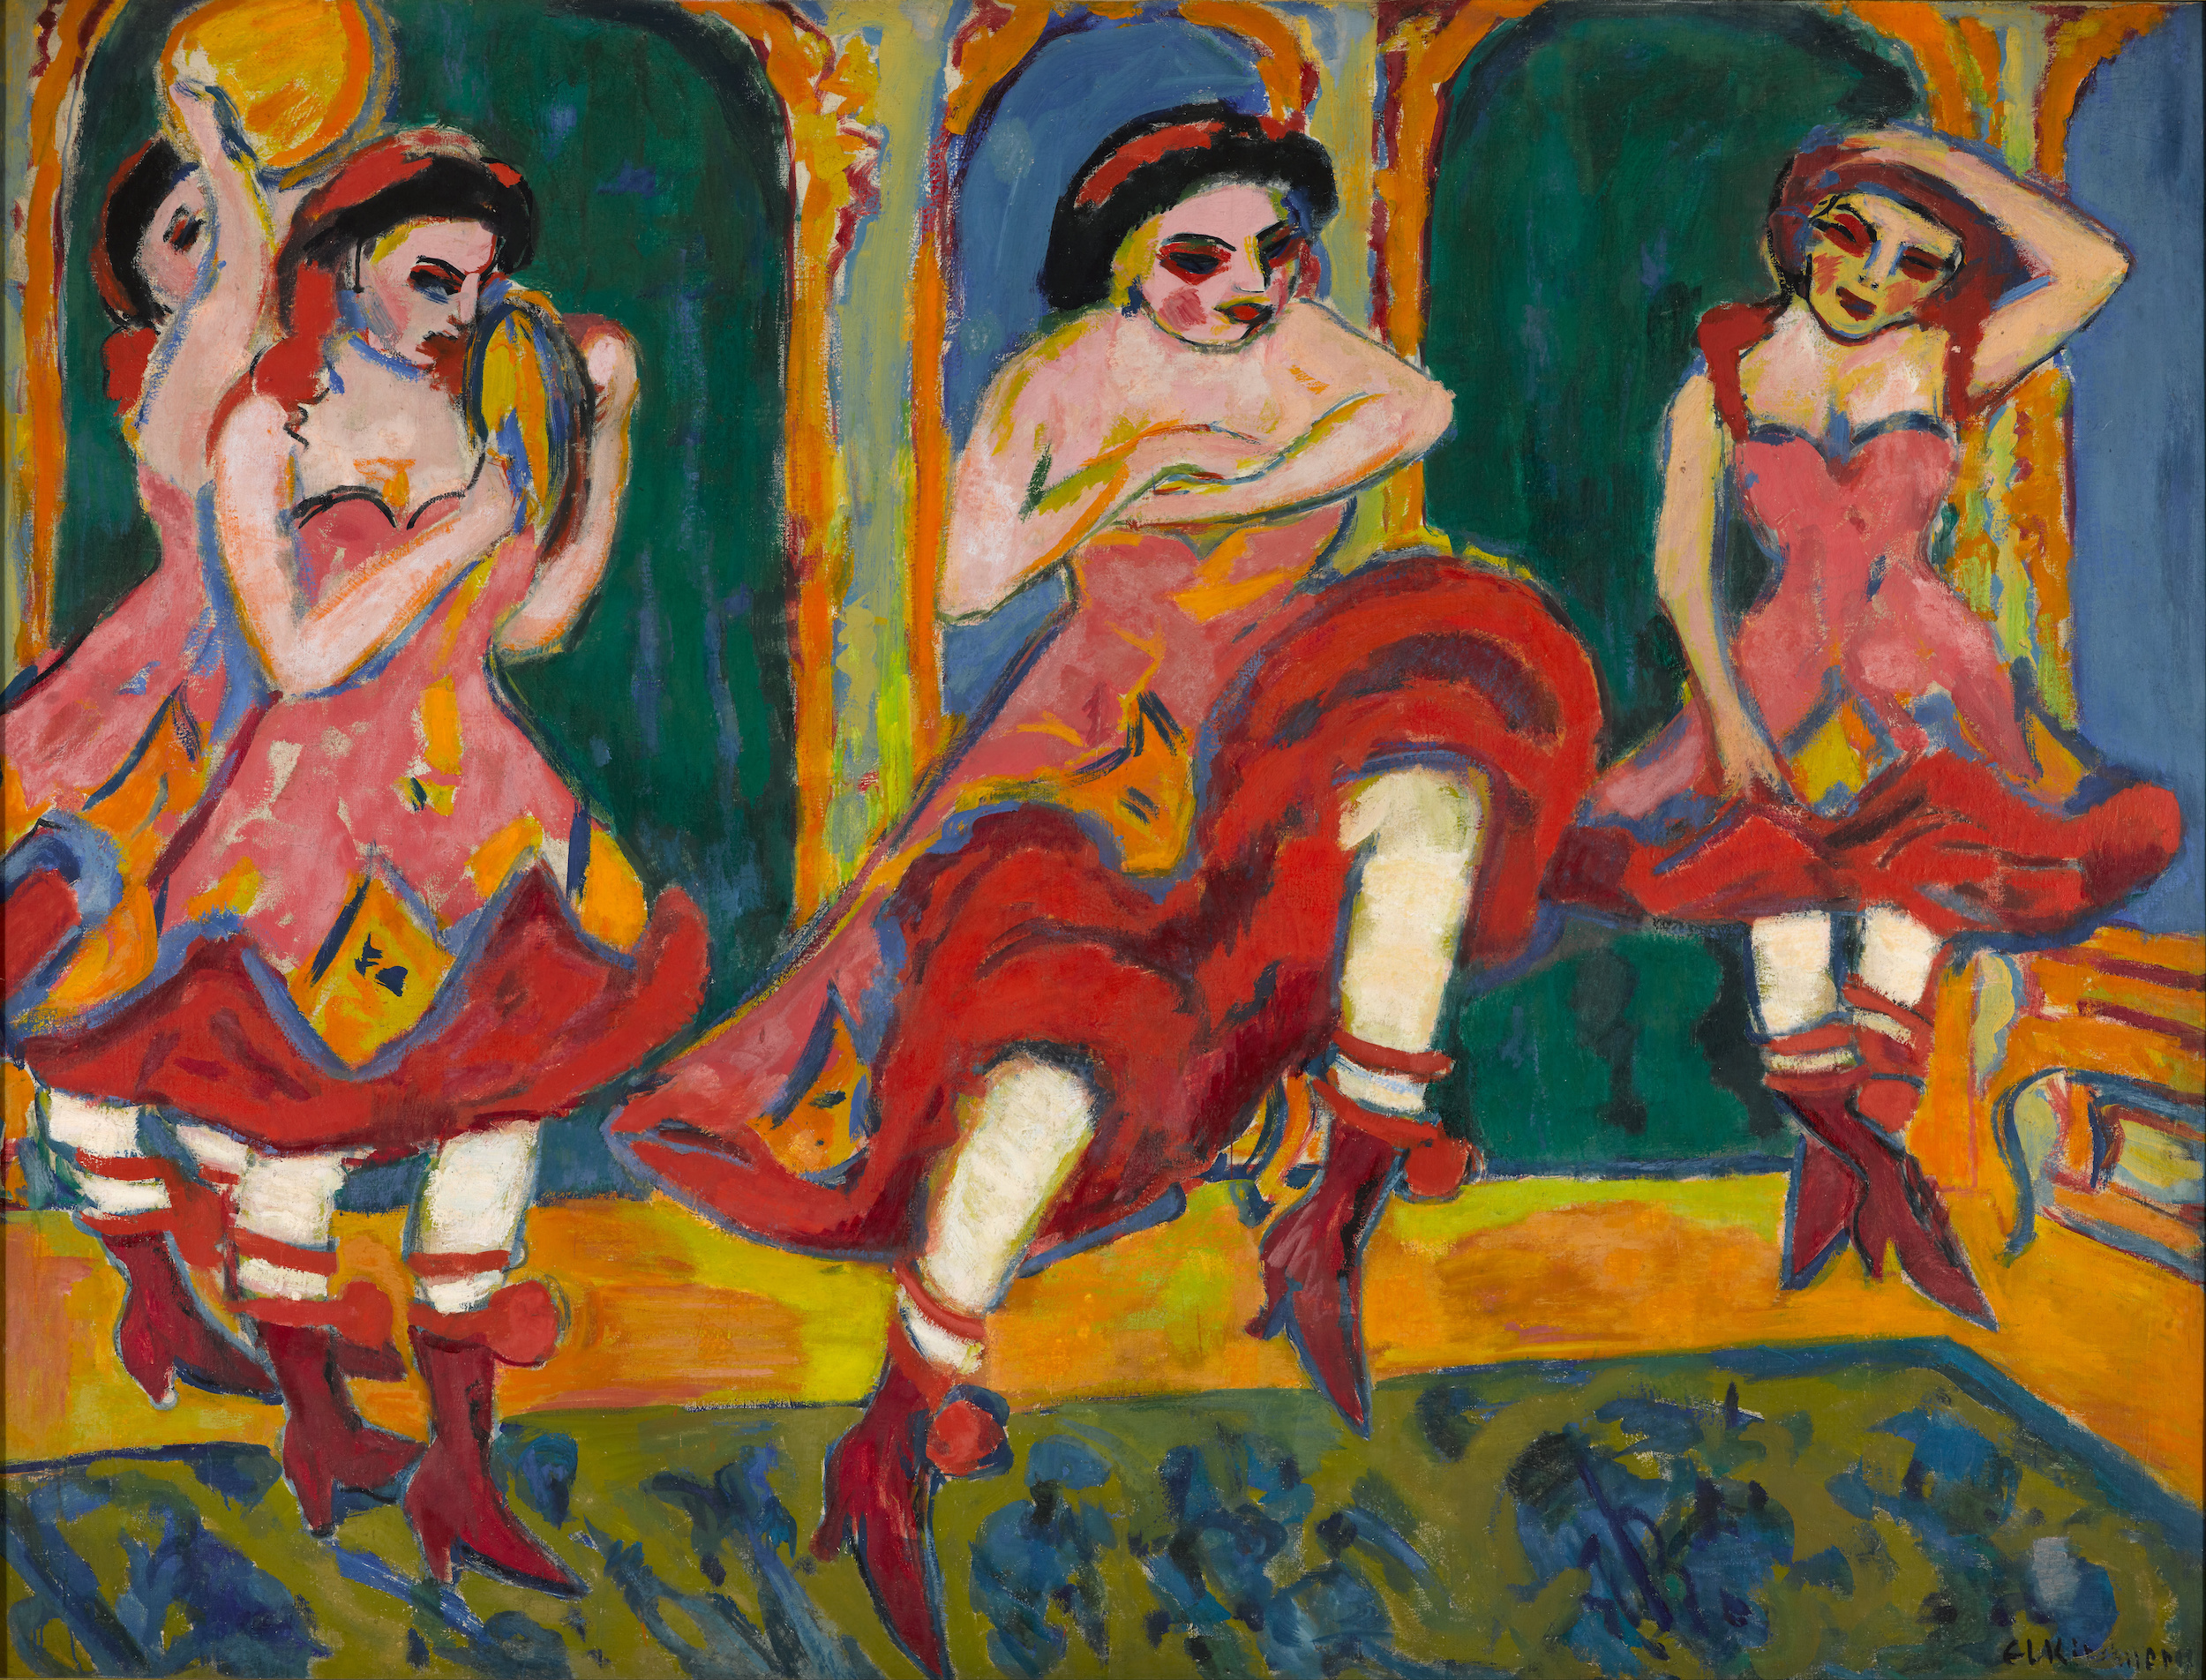 チャールダーシュの踊り子 by Ernst Ludwig Kirchner - 1908-1920 - 223.2 x 172.2 cm 